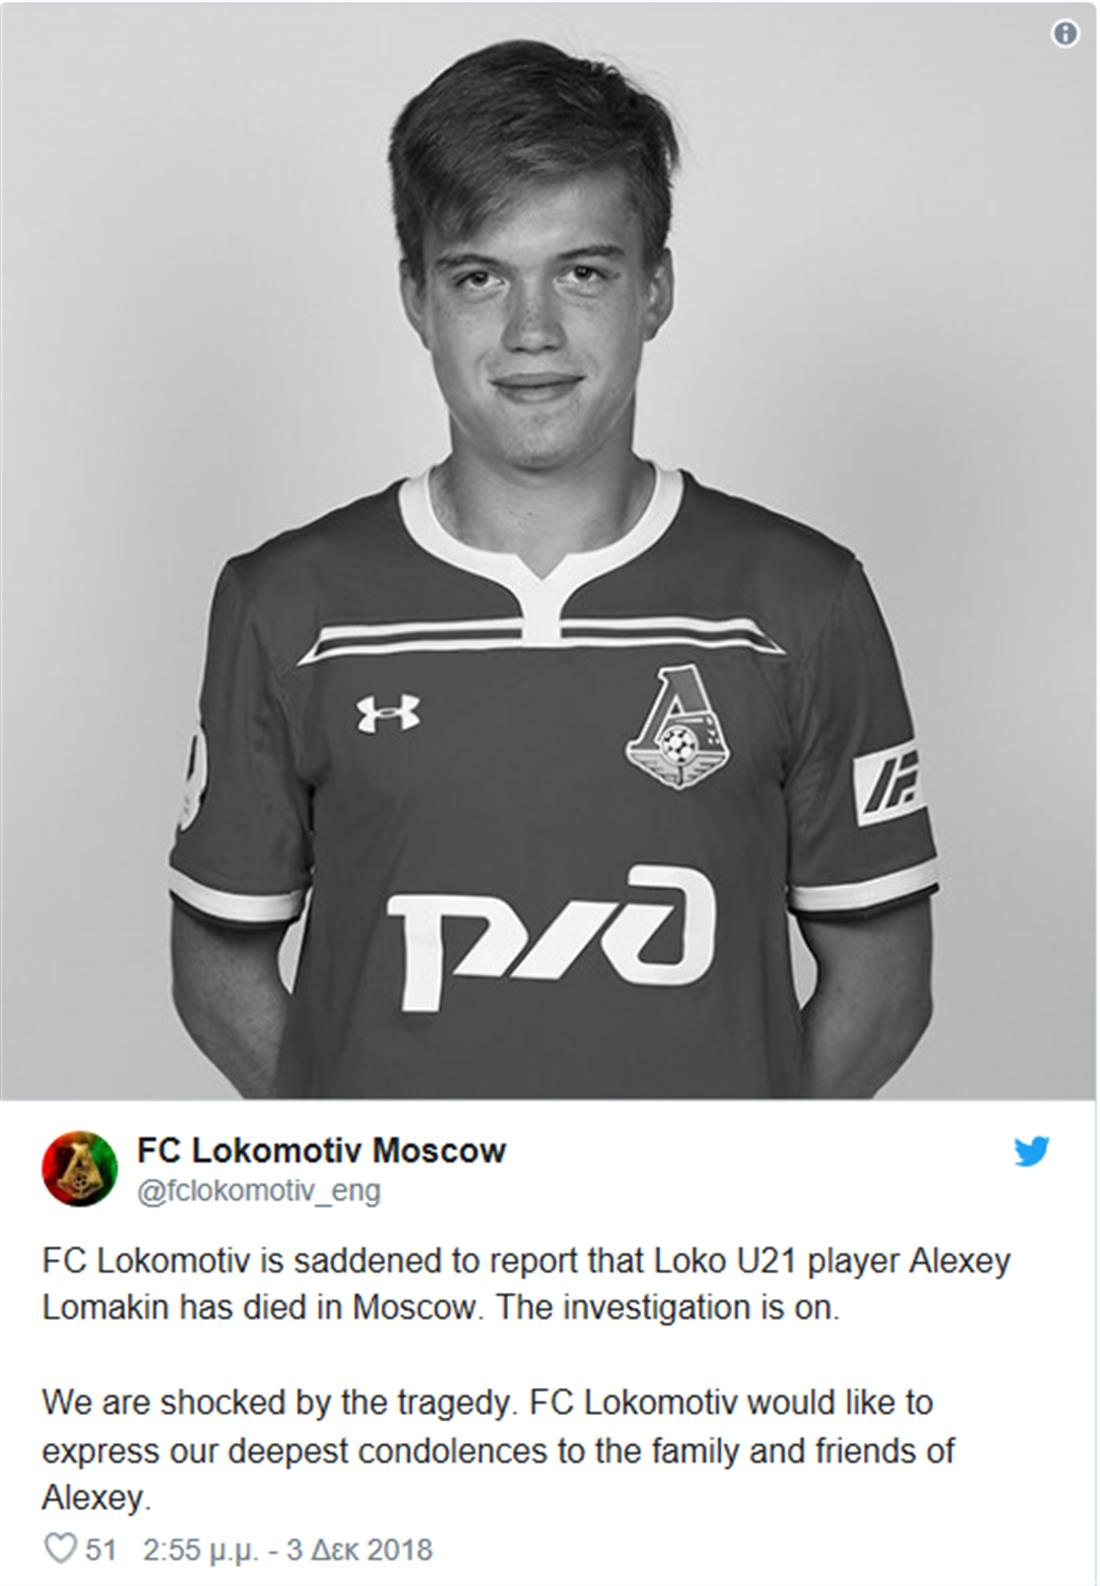 Λοκομοτίβ Μόσχας - ποδοσφαιριστής - νεκρός